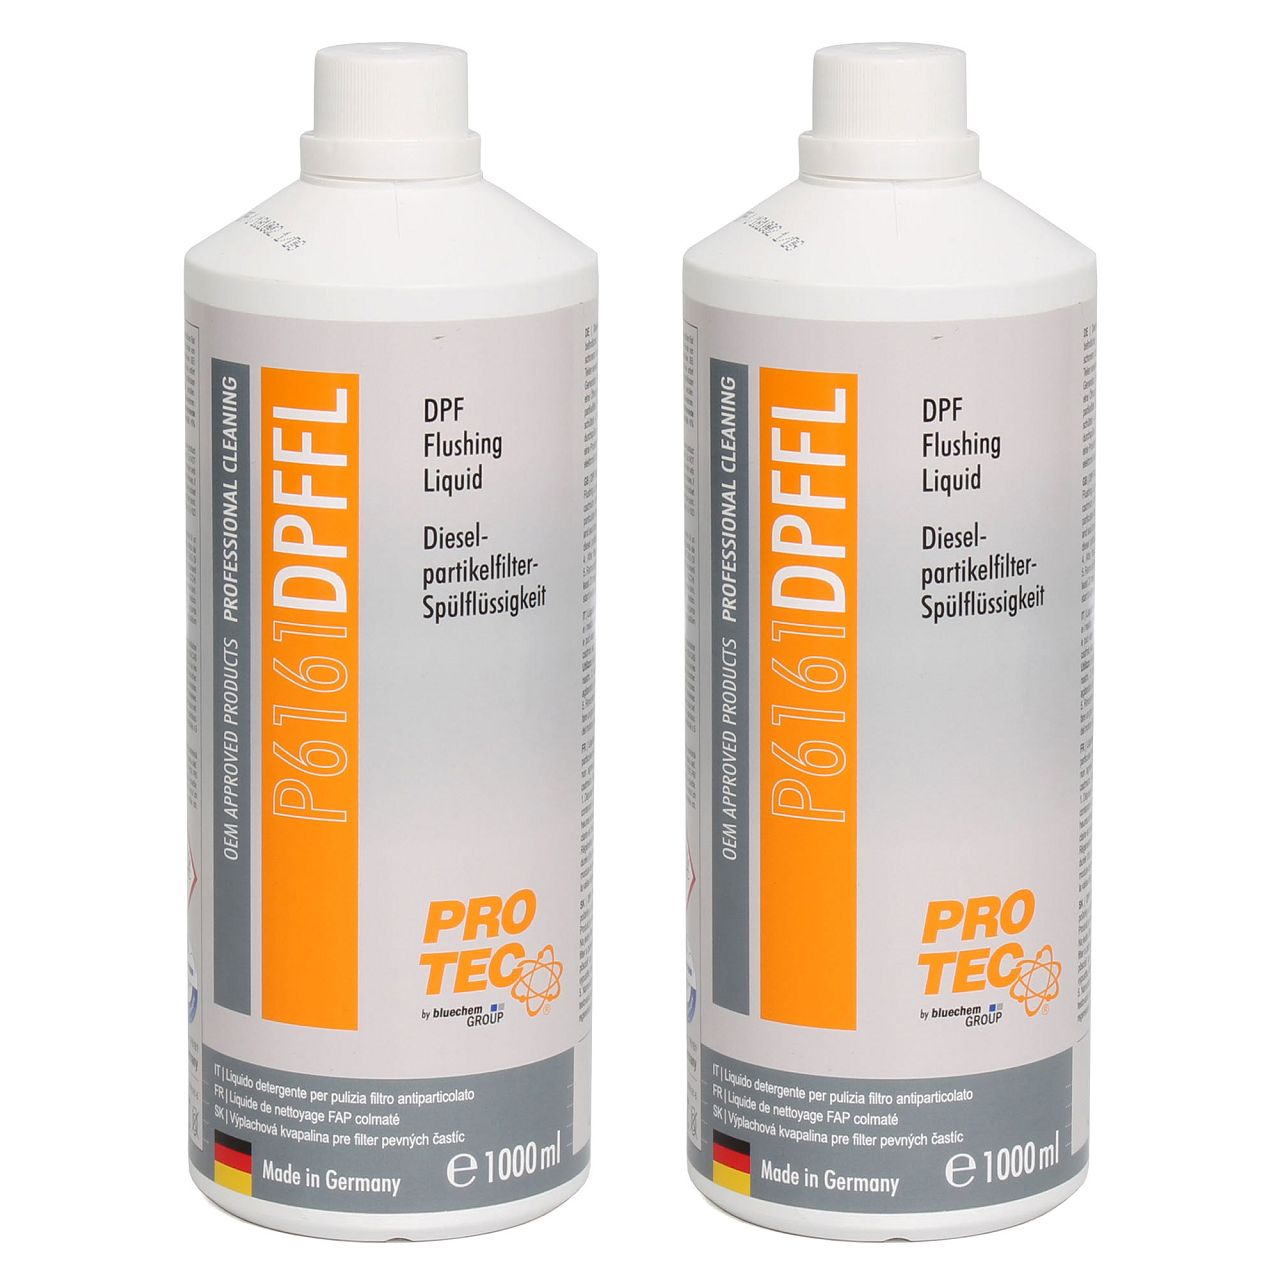 PROTEC DPF Flushing Liquid Dieselpartikelfilter-Spülflüssigkeit Reiniger 2 Liter